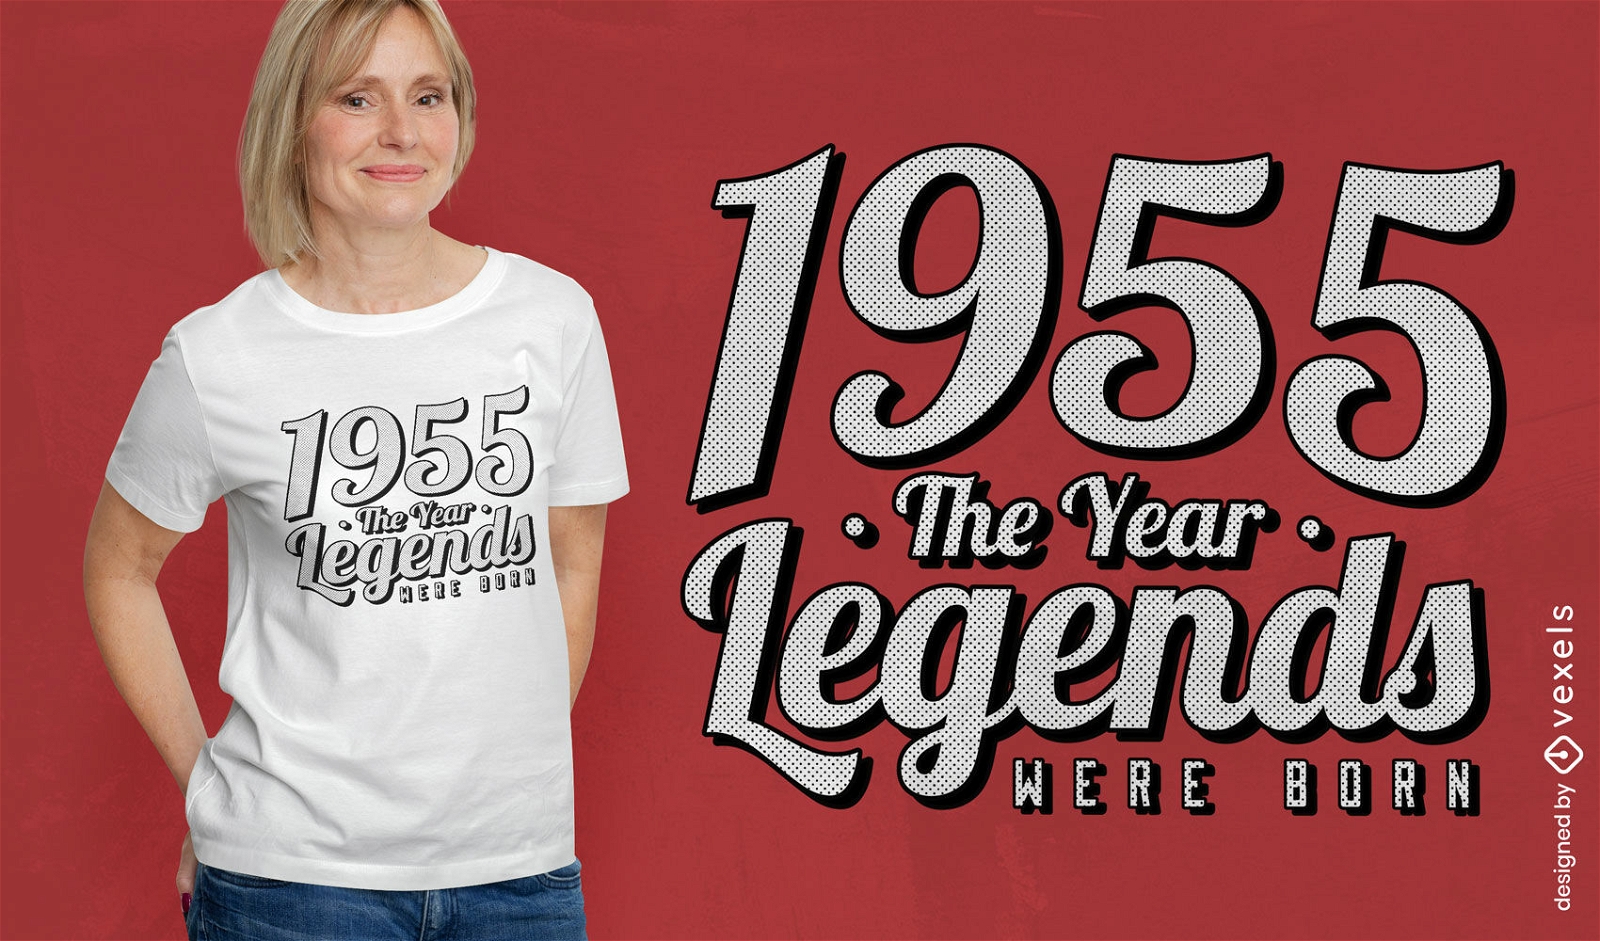 Dise?o de camiseta con letras de leyendas de 1955.